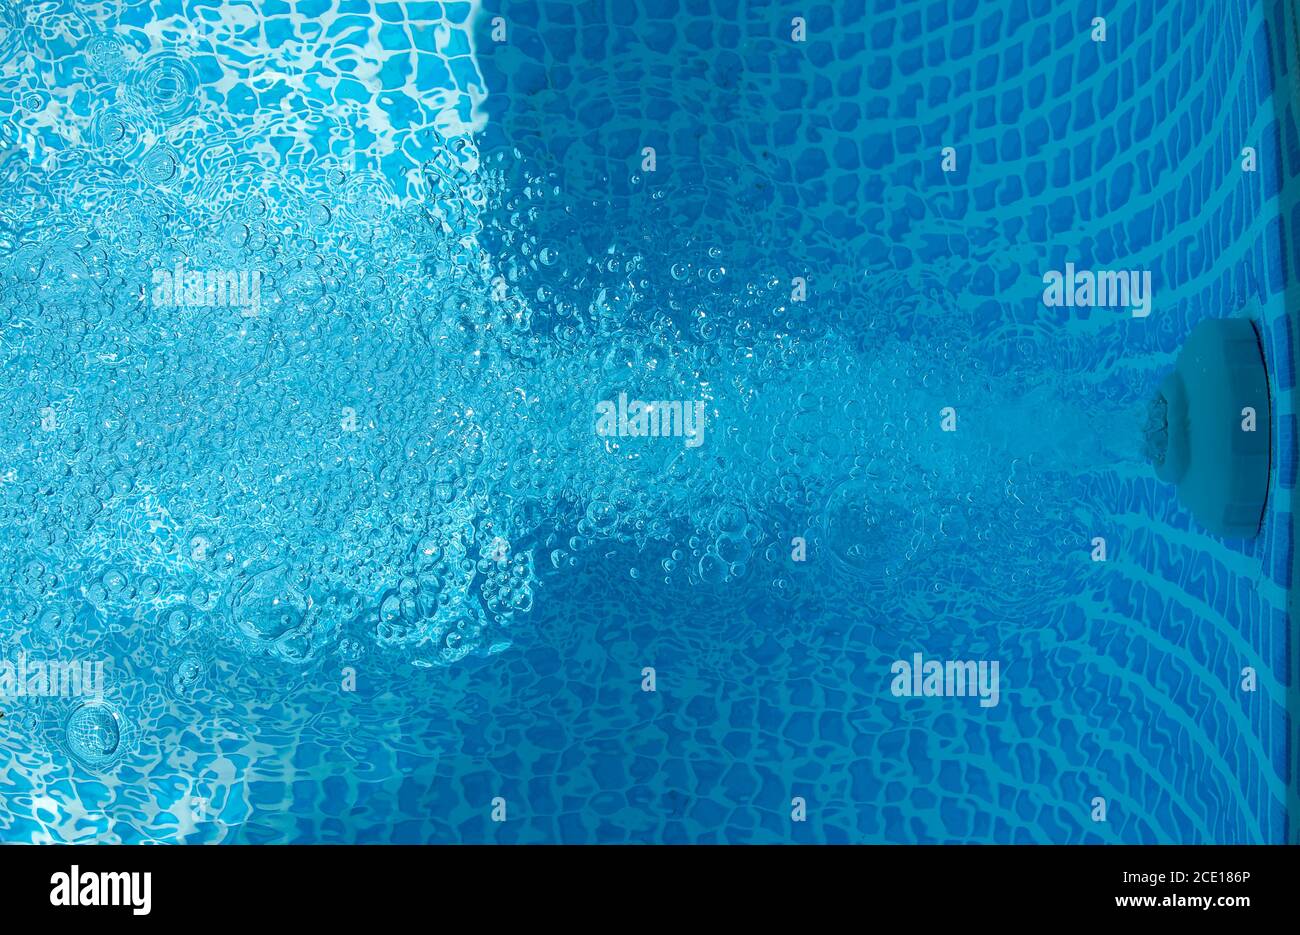 agua transparente en la piscina - salida visible de agua filtrada y aireada Foto de stock